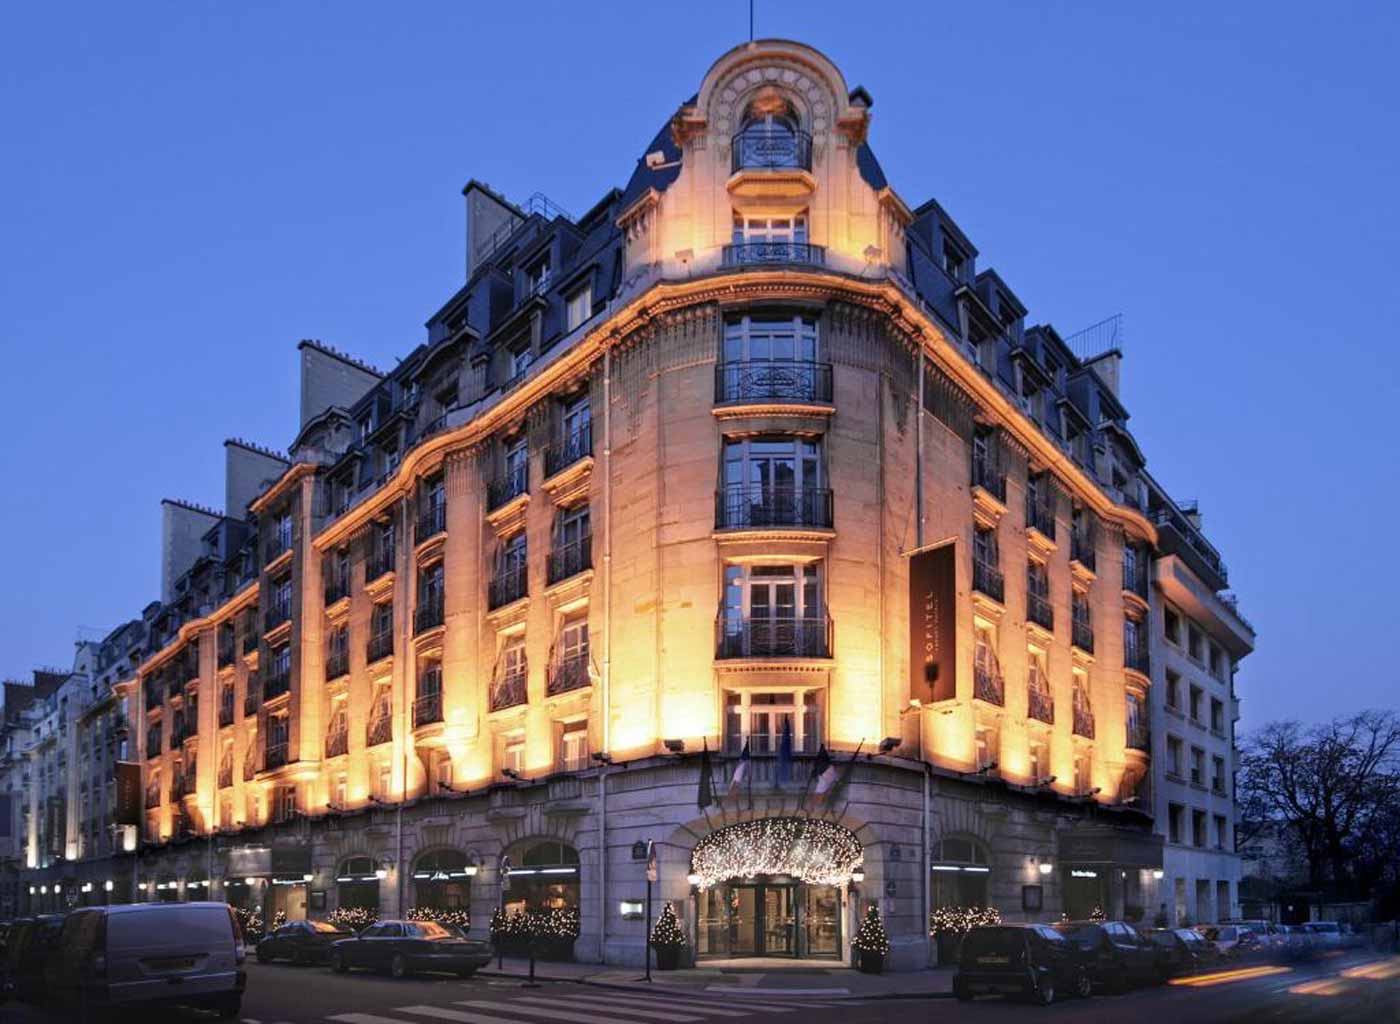 Hotel Sofitel Paris Arc De Triomphe - Hotéis de luxo em Paris